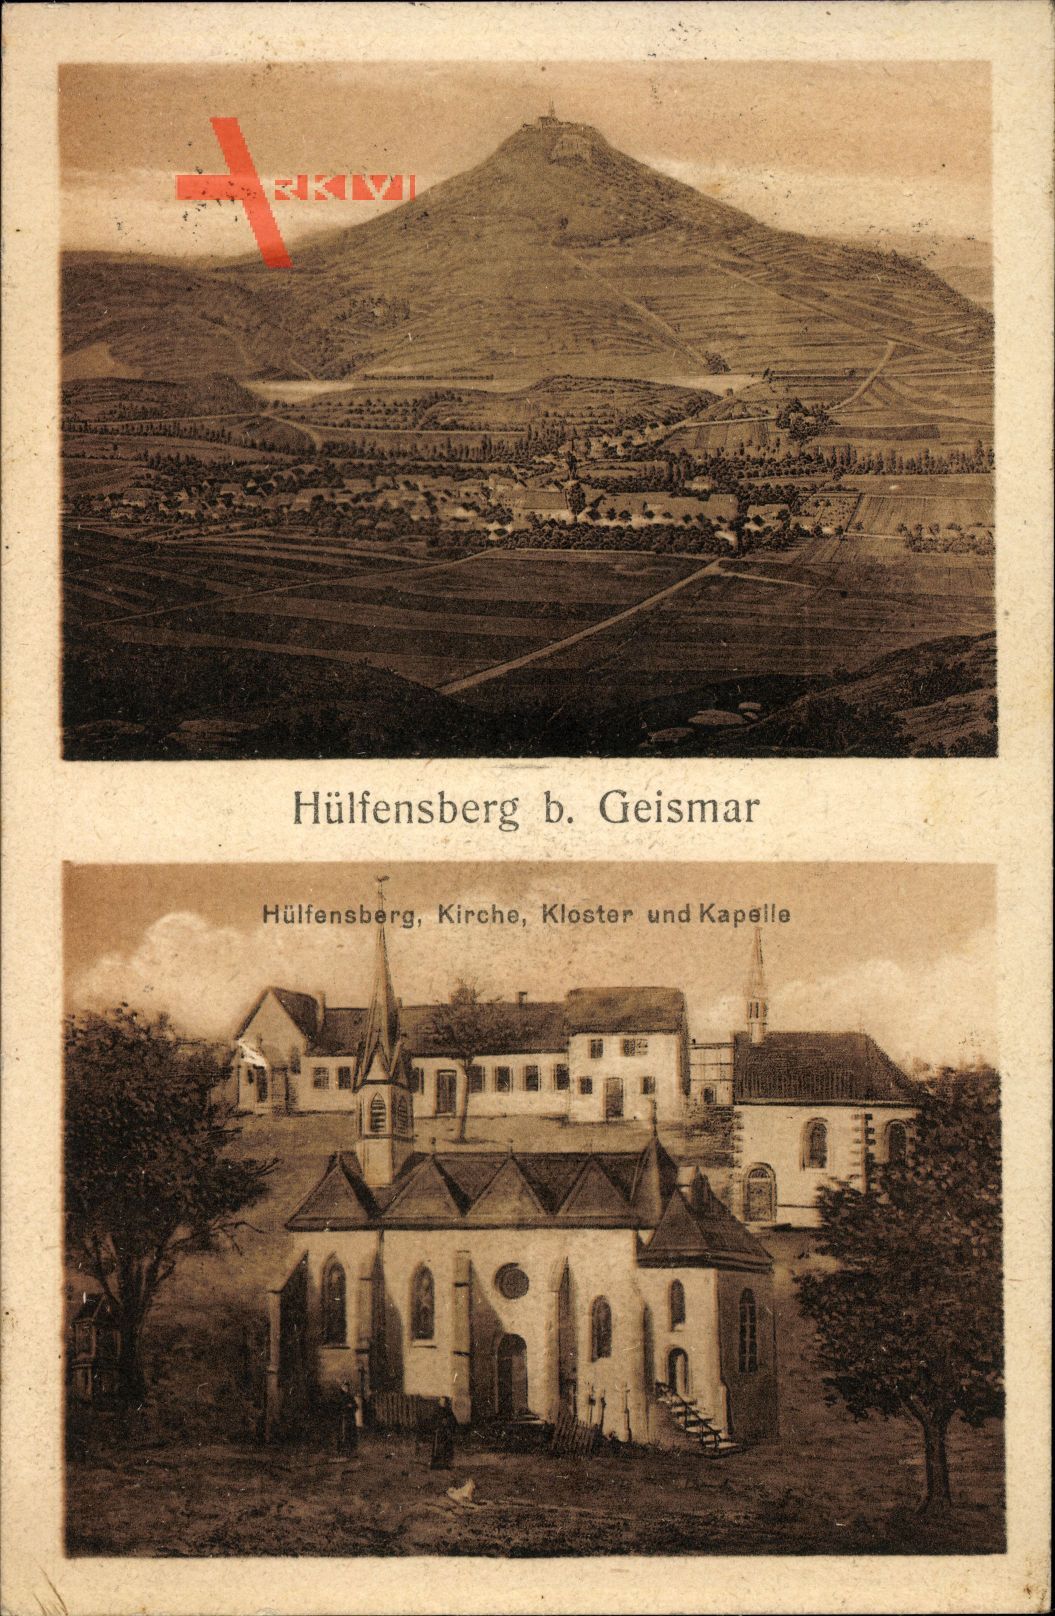 Geismar in Thüringen, Kirche, Kloster, Kapelle, Ort, Hülfensberg